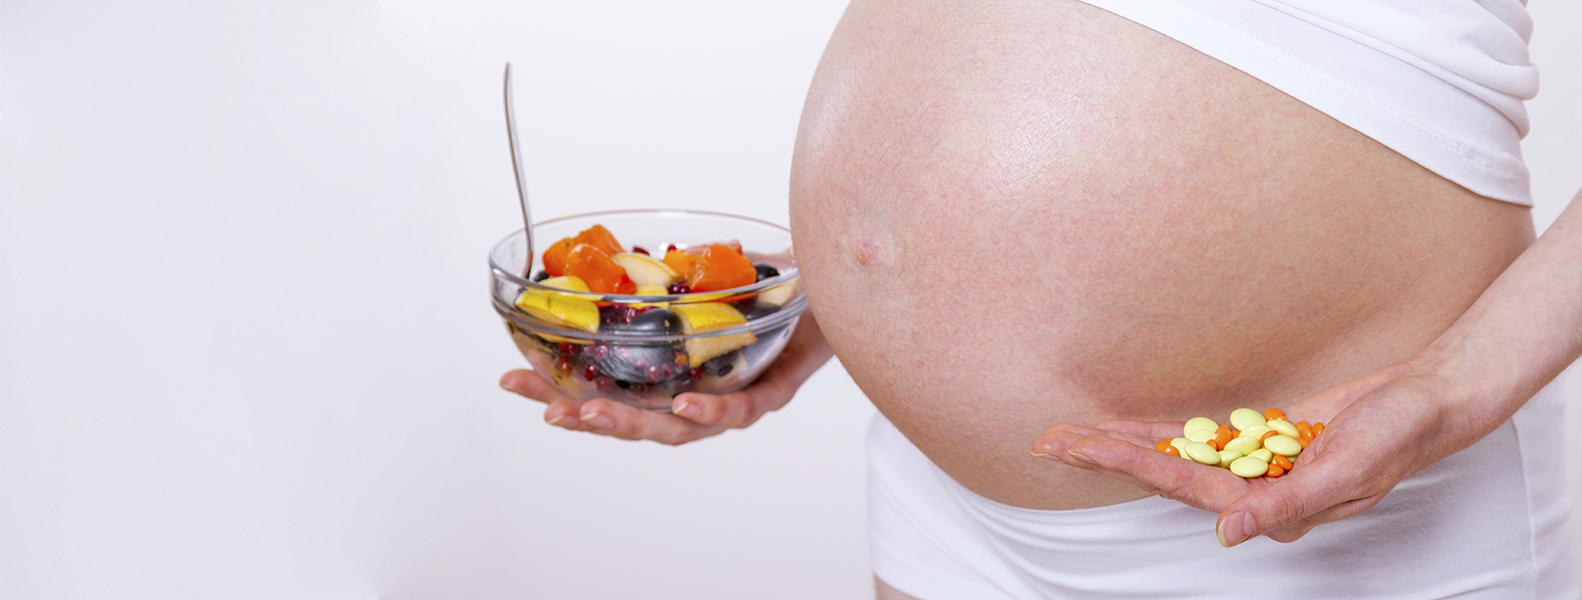 Por qué es importante tomar ácido fólico durante el embarazo